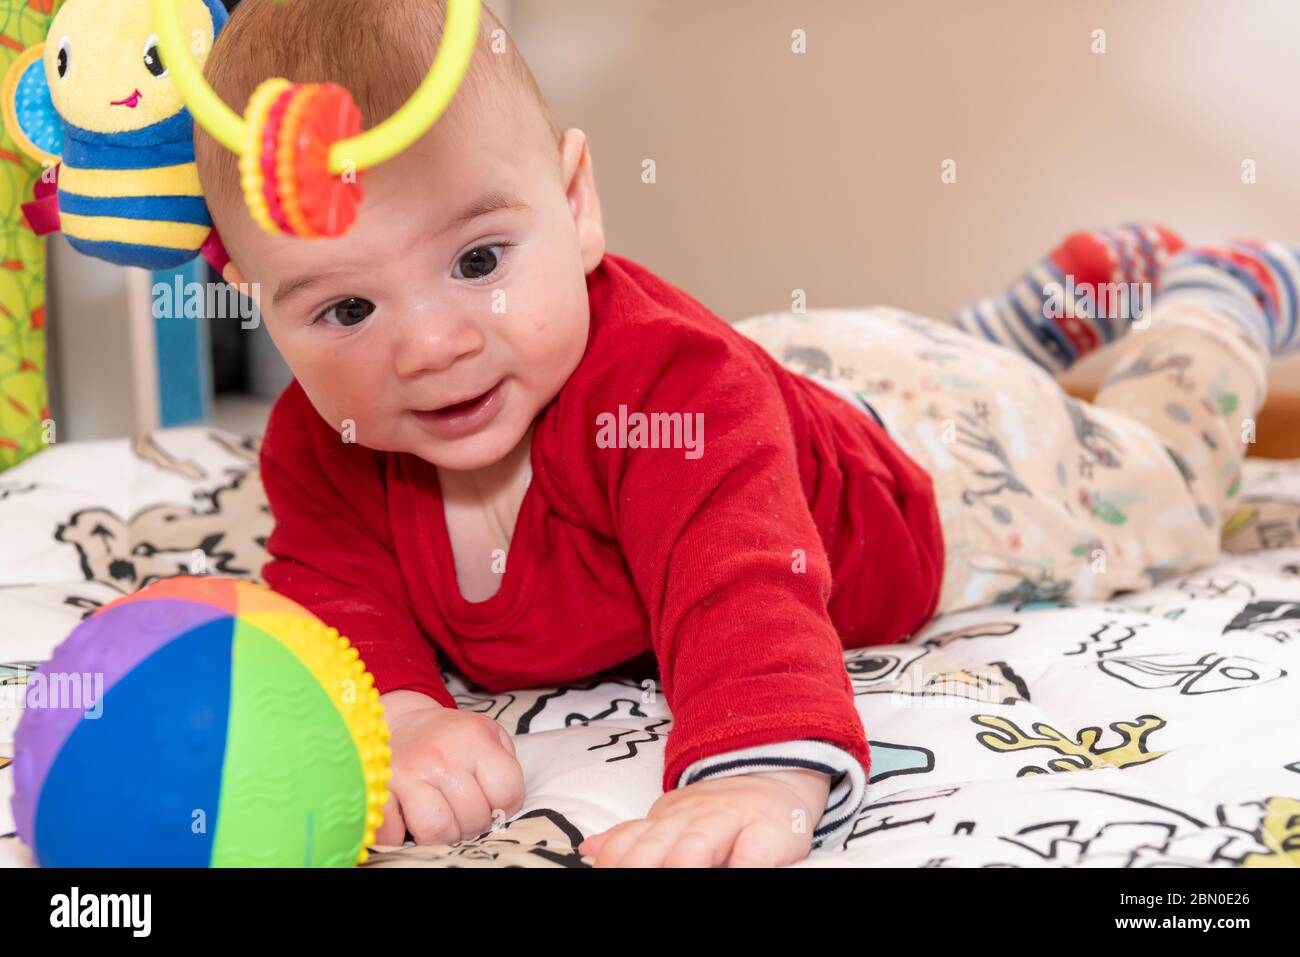 Lindo niño pequeño durante el tiempo de la barriga mirando la cámara. niño de 6 meses con expresión de curiosidad en su rostro rodeado de juguetes coloridos. Foto de stock